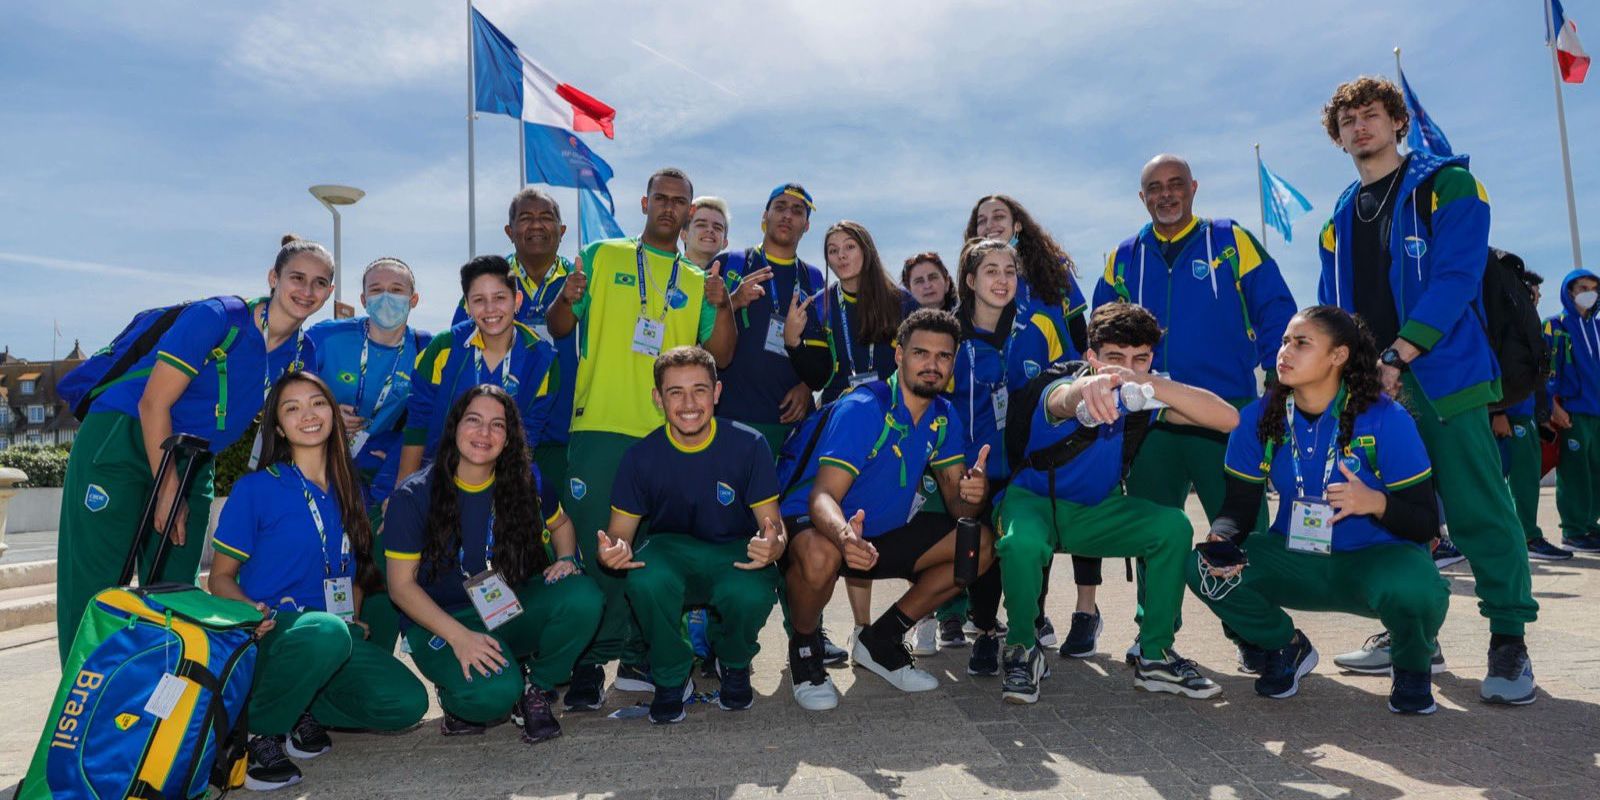 Le Brésil se classe 2e au classement général des médailles olympiques étudiantes